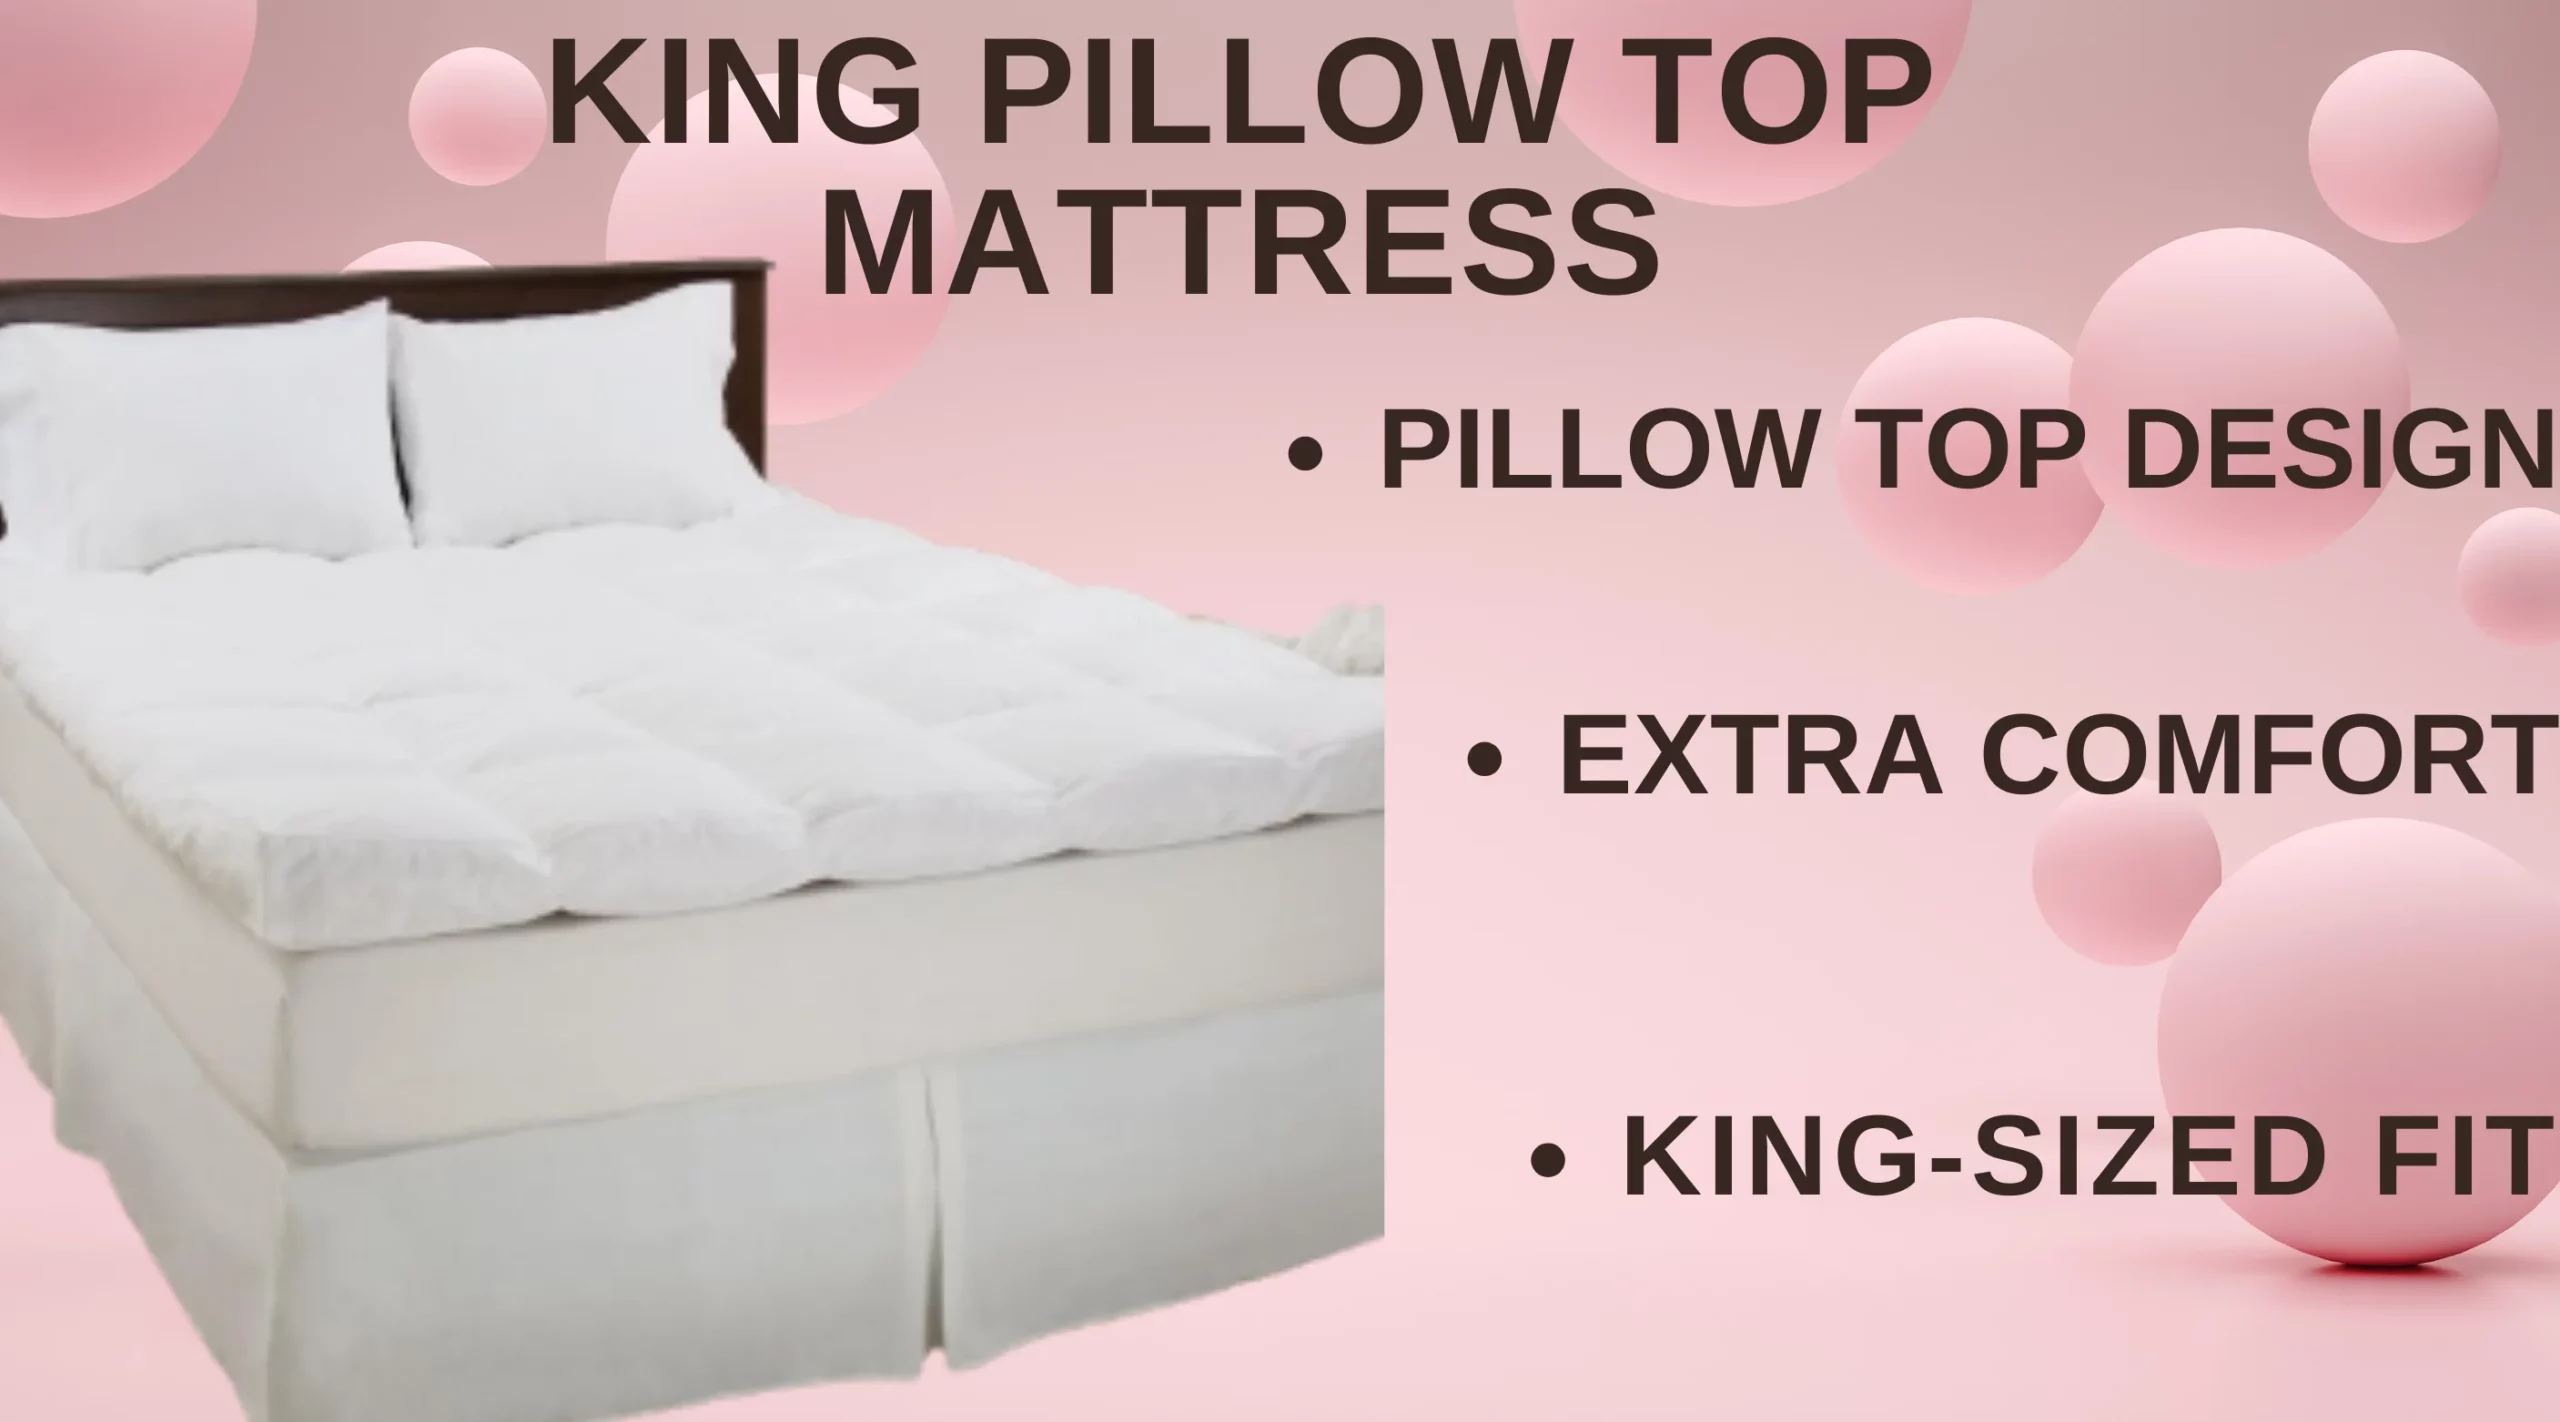 King Pillow Top Mattress